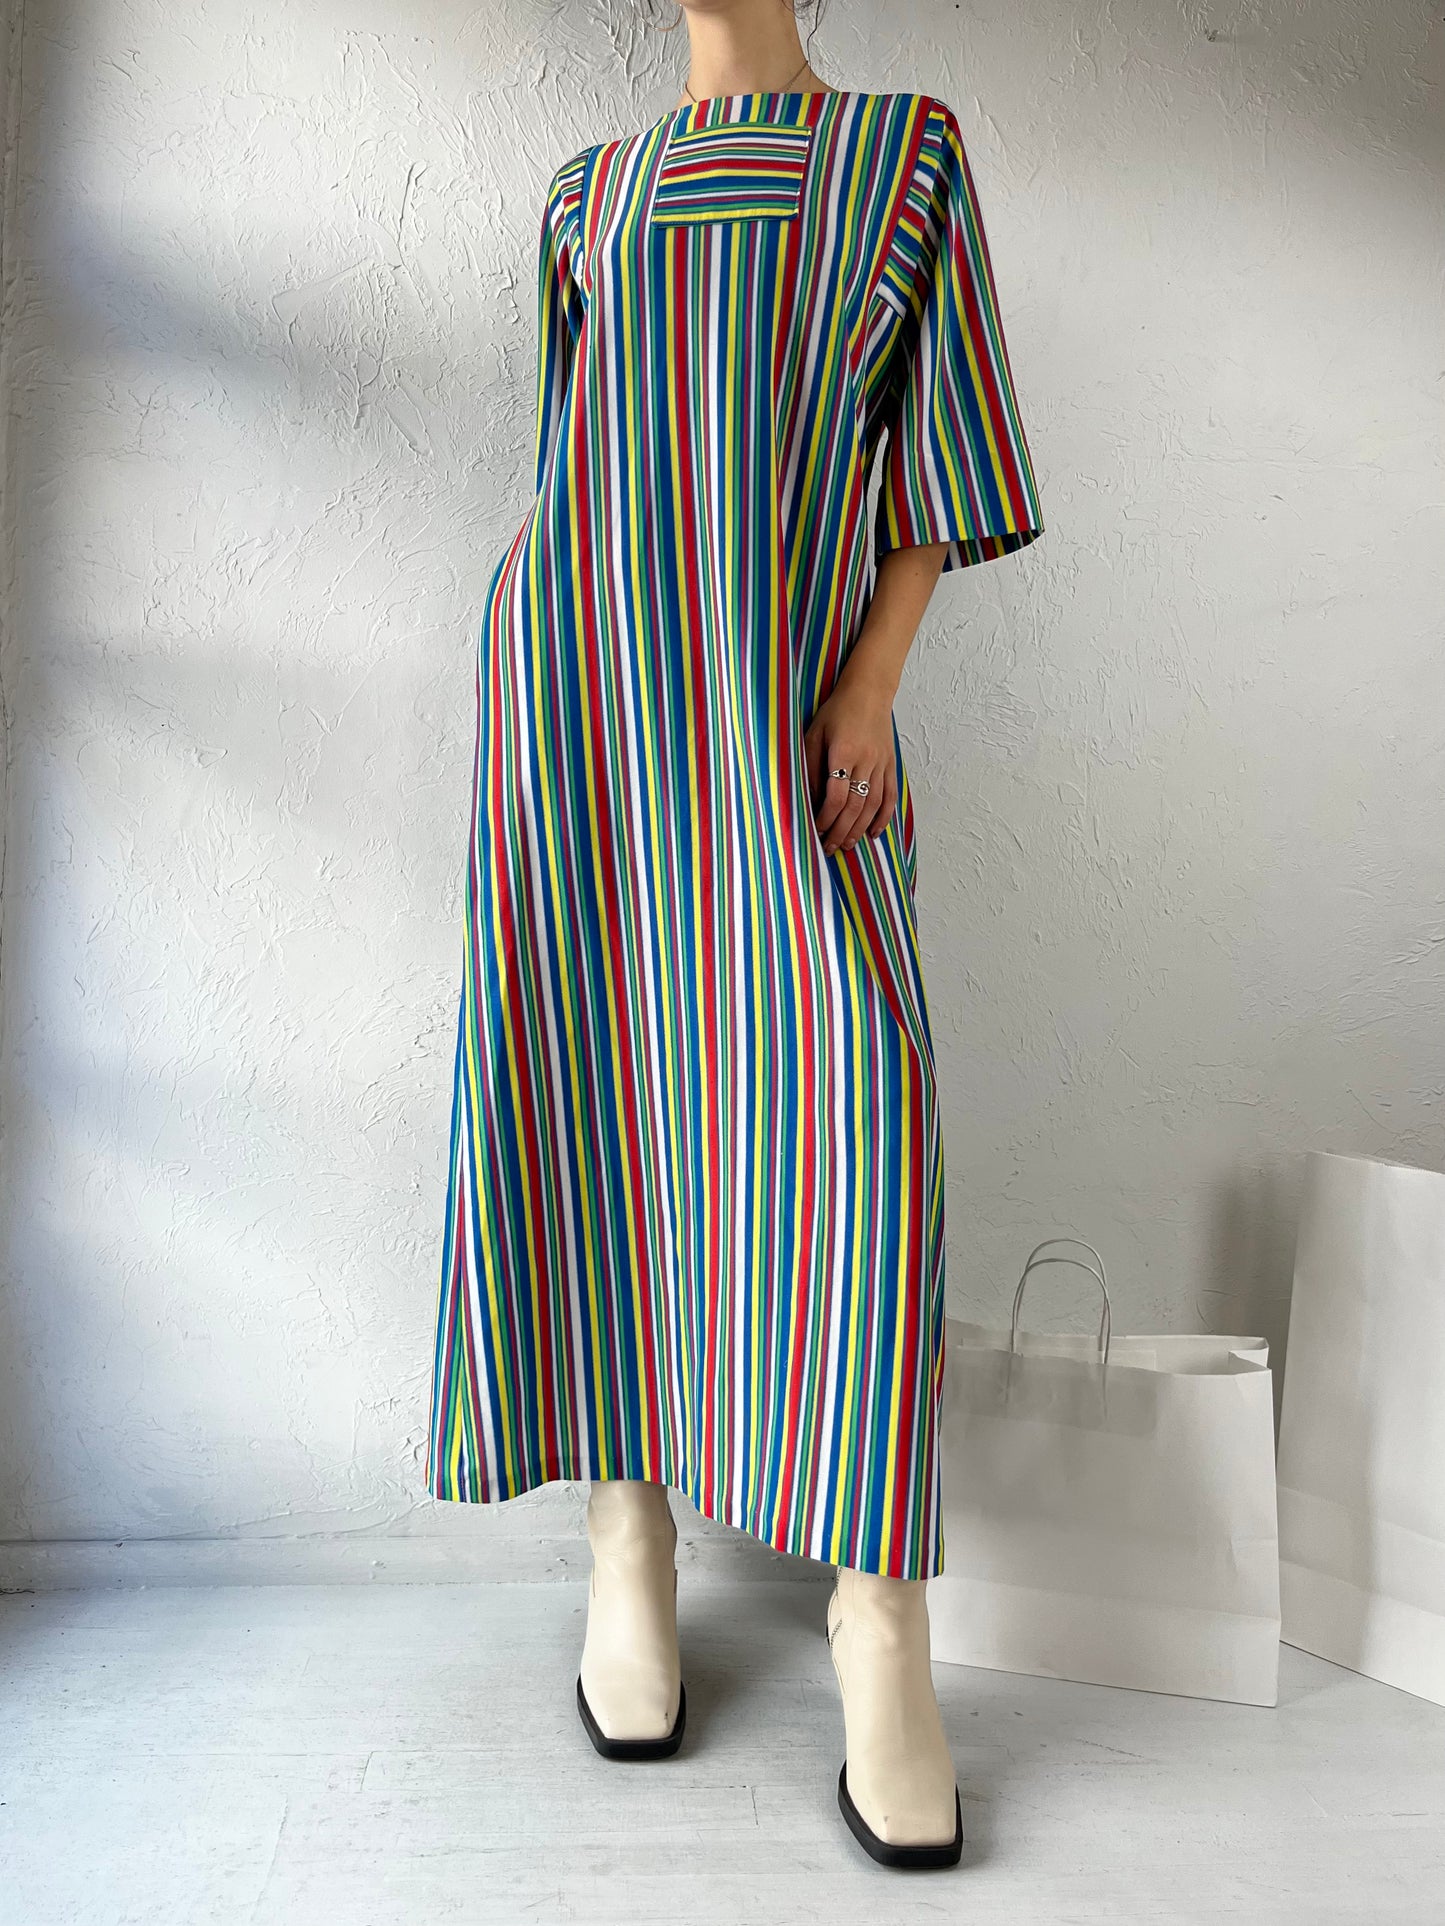 70s Striped Rainbow Mumu Maxi Dress / Small